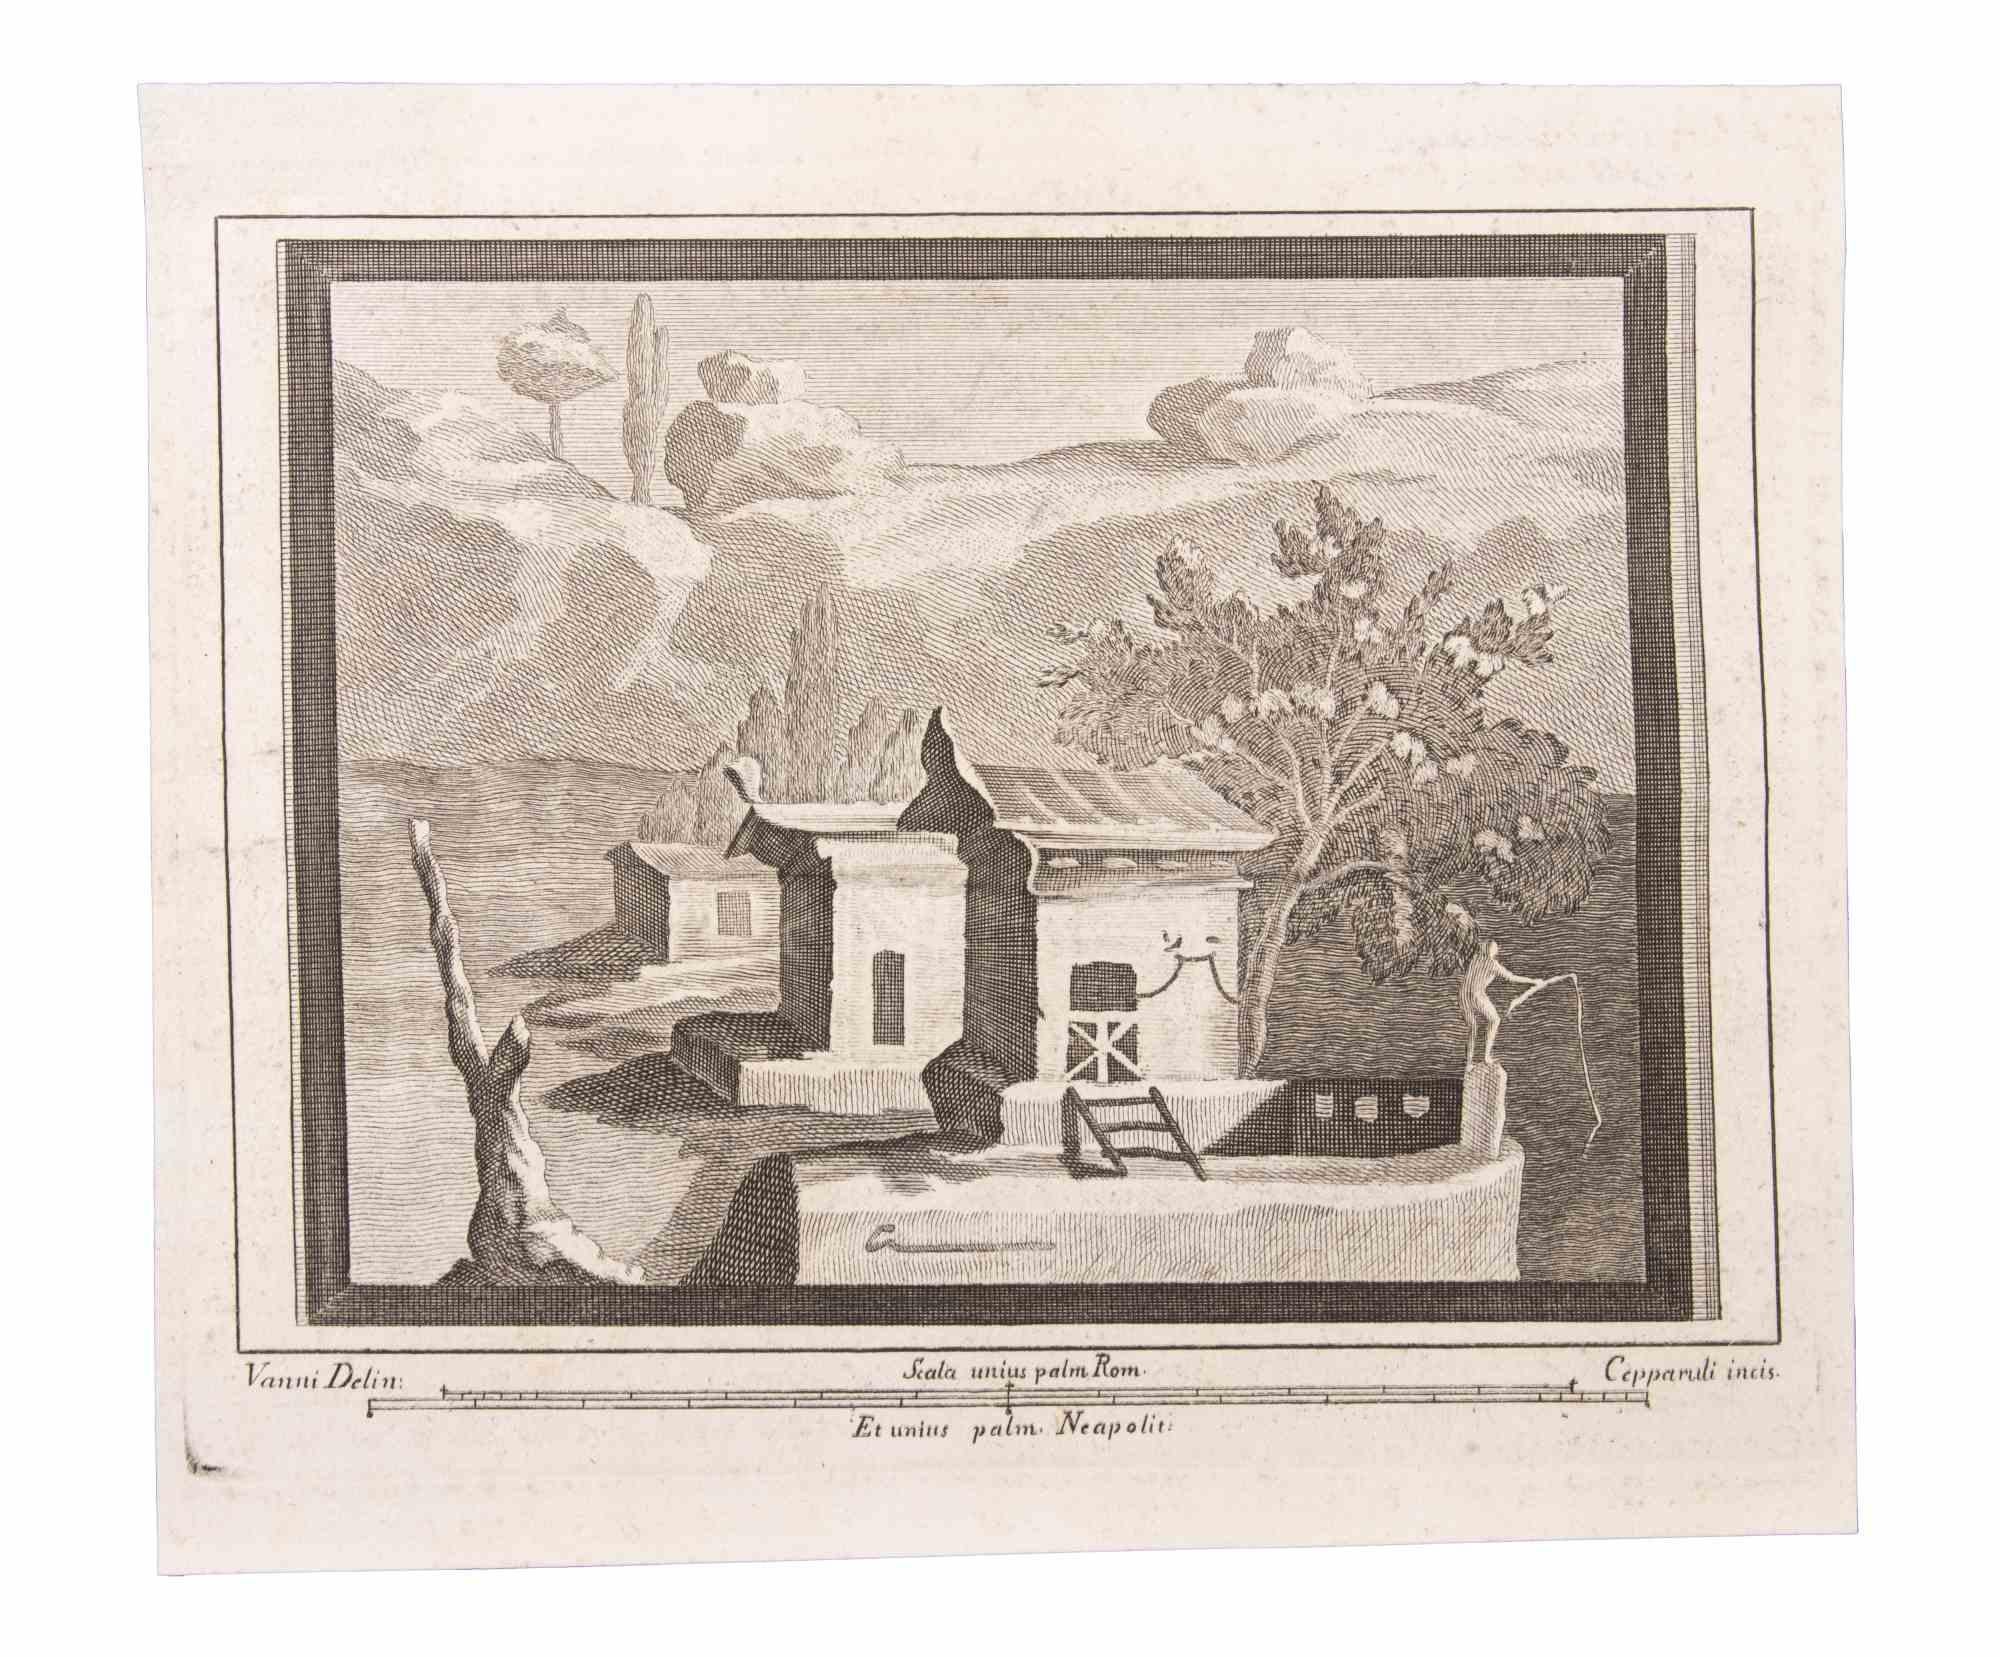 Paysage marin avec monuments  est une eau-forte réalisée par Francesco Cepparuli (1750-1767).

La gravure appartient à la suite d'estampes "Antiquités d'Herculanum exposées" (titre original : "Le Antichità di Ercolano Esposte"), un volume de huit